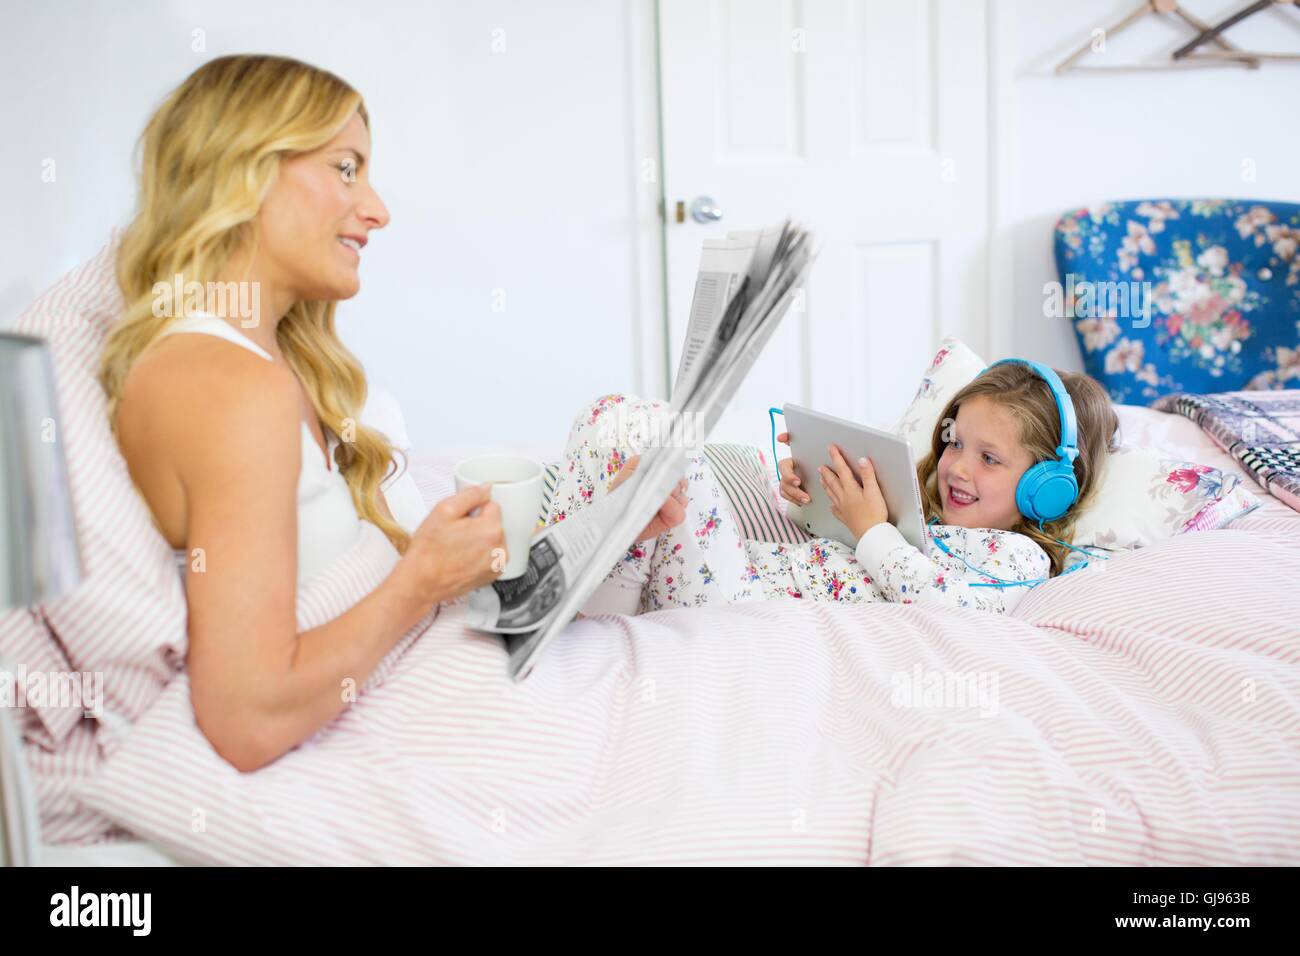 Proprietà rilasciato. Modello rilasciato. Madre e figlia a letto con il giornale e la tavoletta digitale. Foto Stock